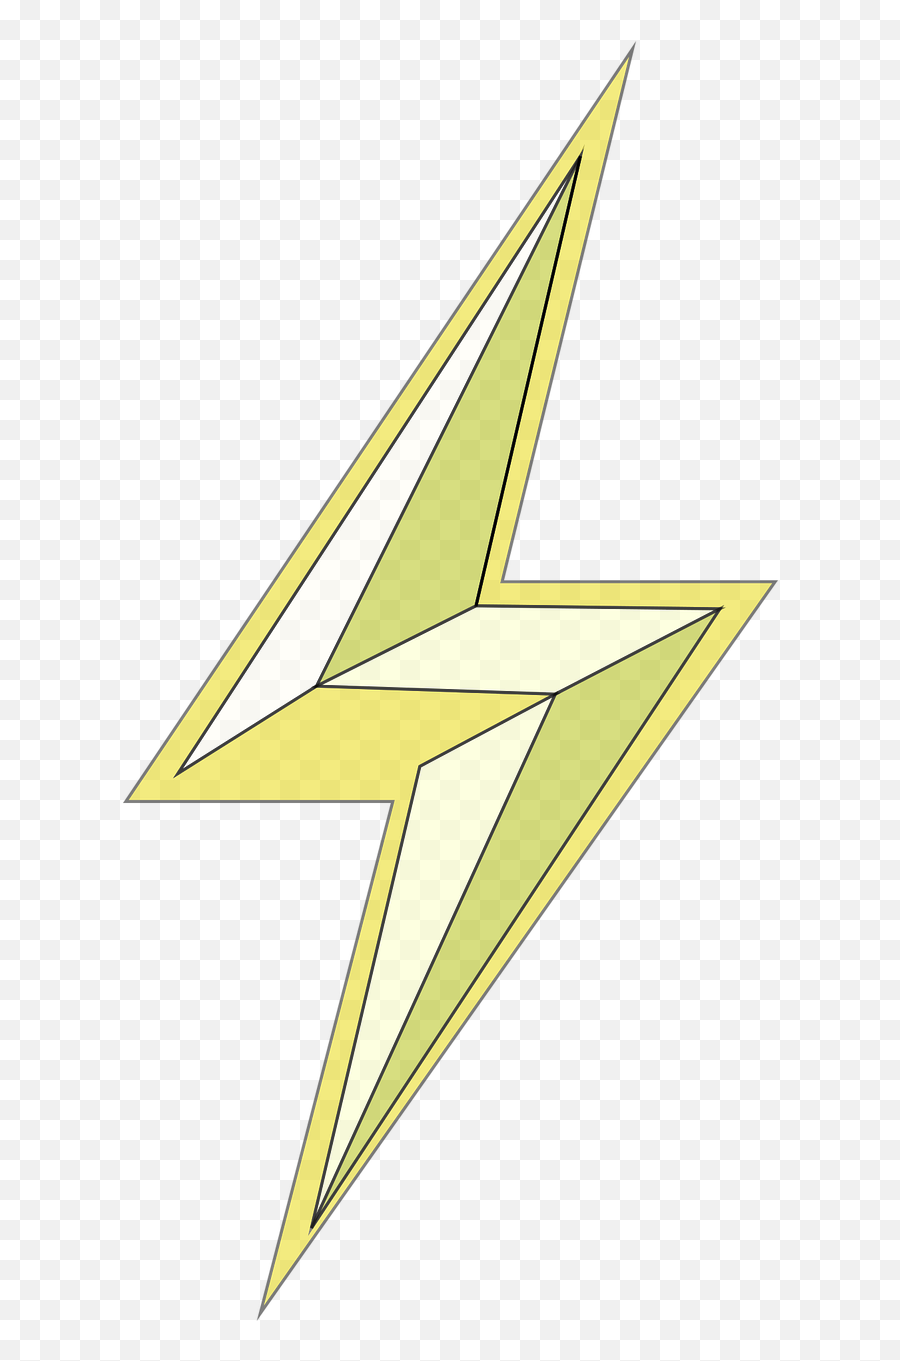 Lightning Bolt Electricity - Lightning Lightning Bolt Power Png,Lightning Bolt Transparent Background